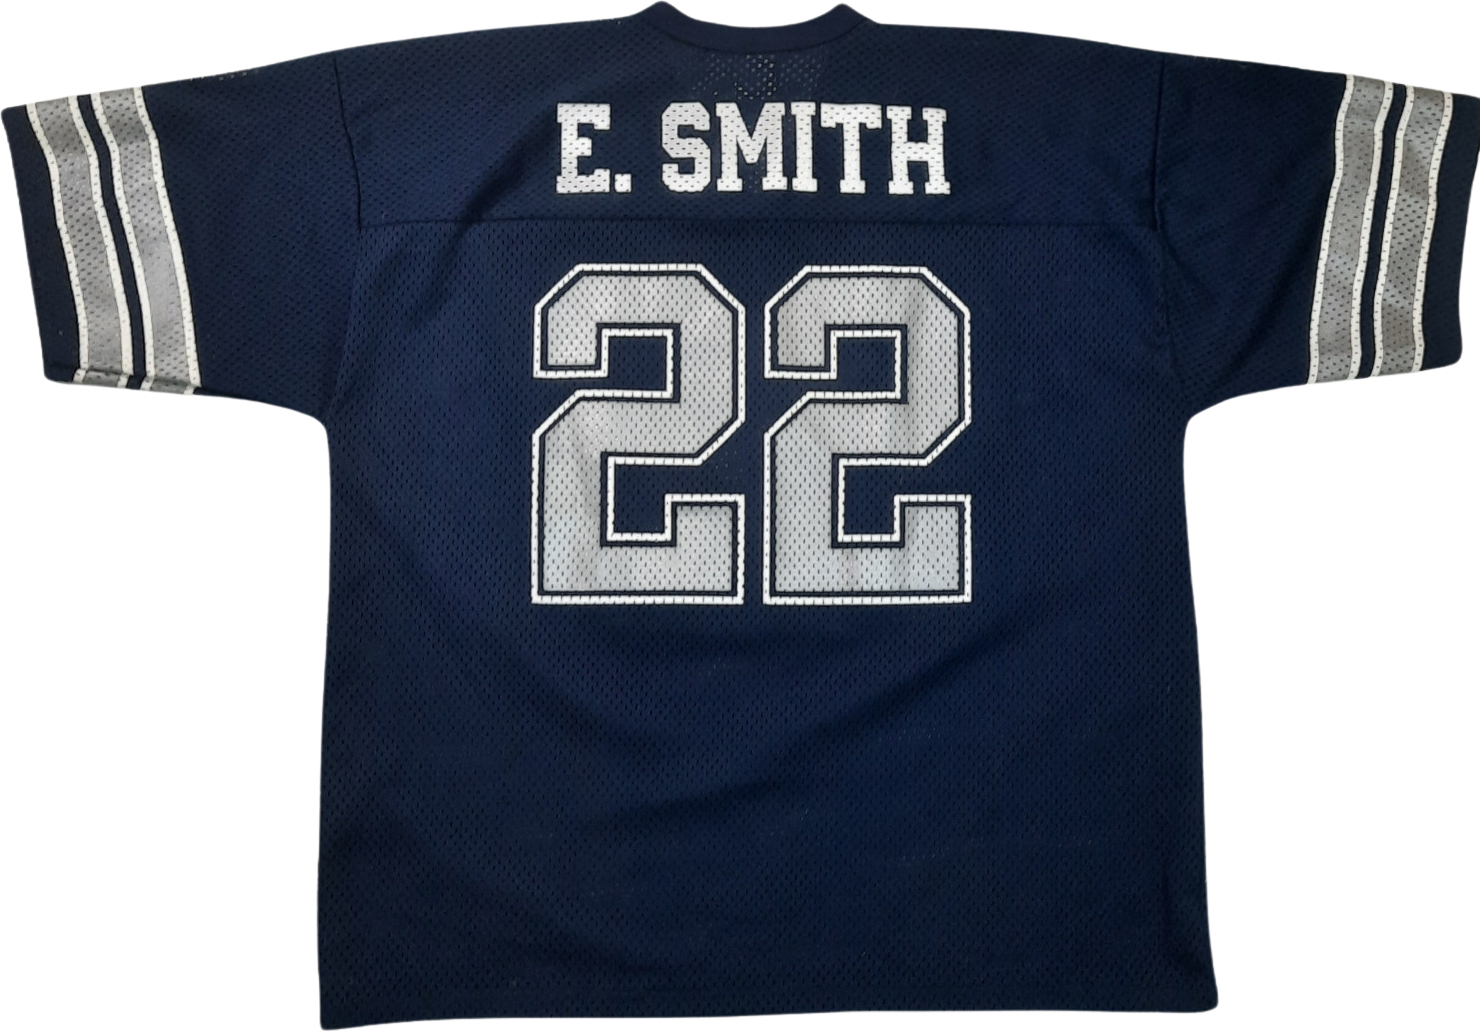 Vintage Emmitt Smith Dallas Cowboys Jersey With No - Depop